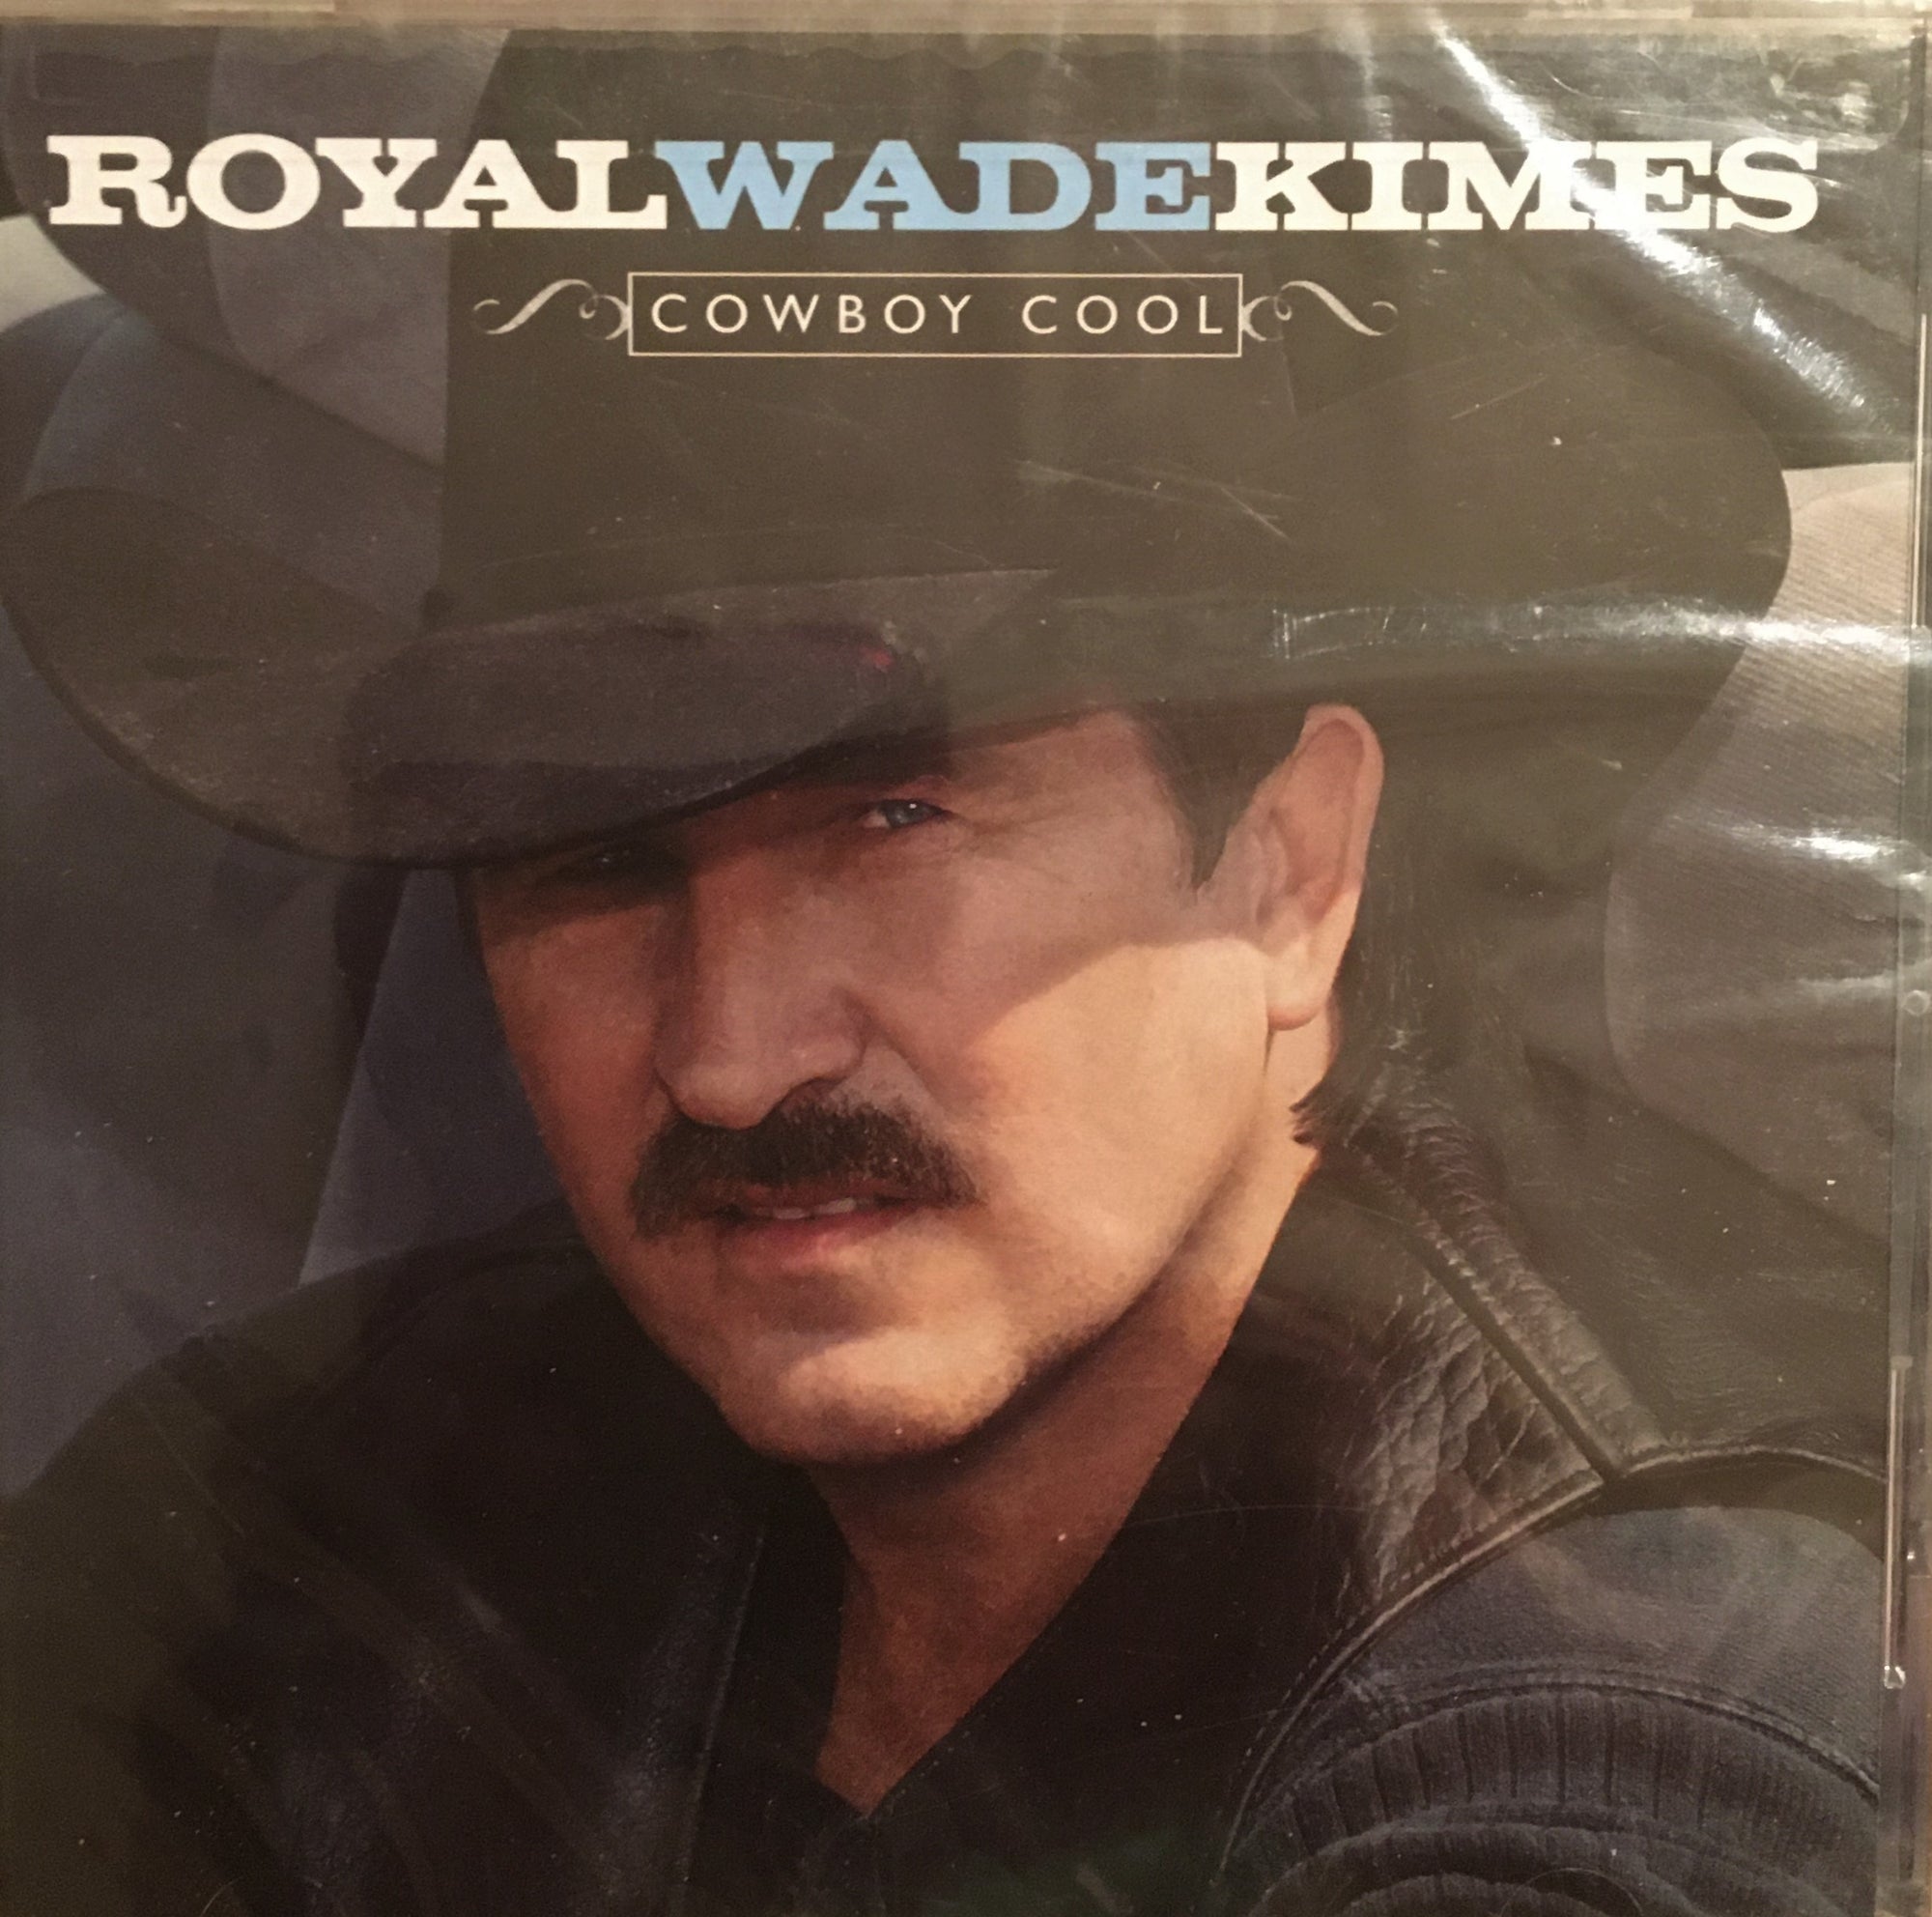 CD Cowboy Cool by Royal Wade Kimes